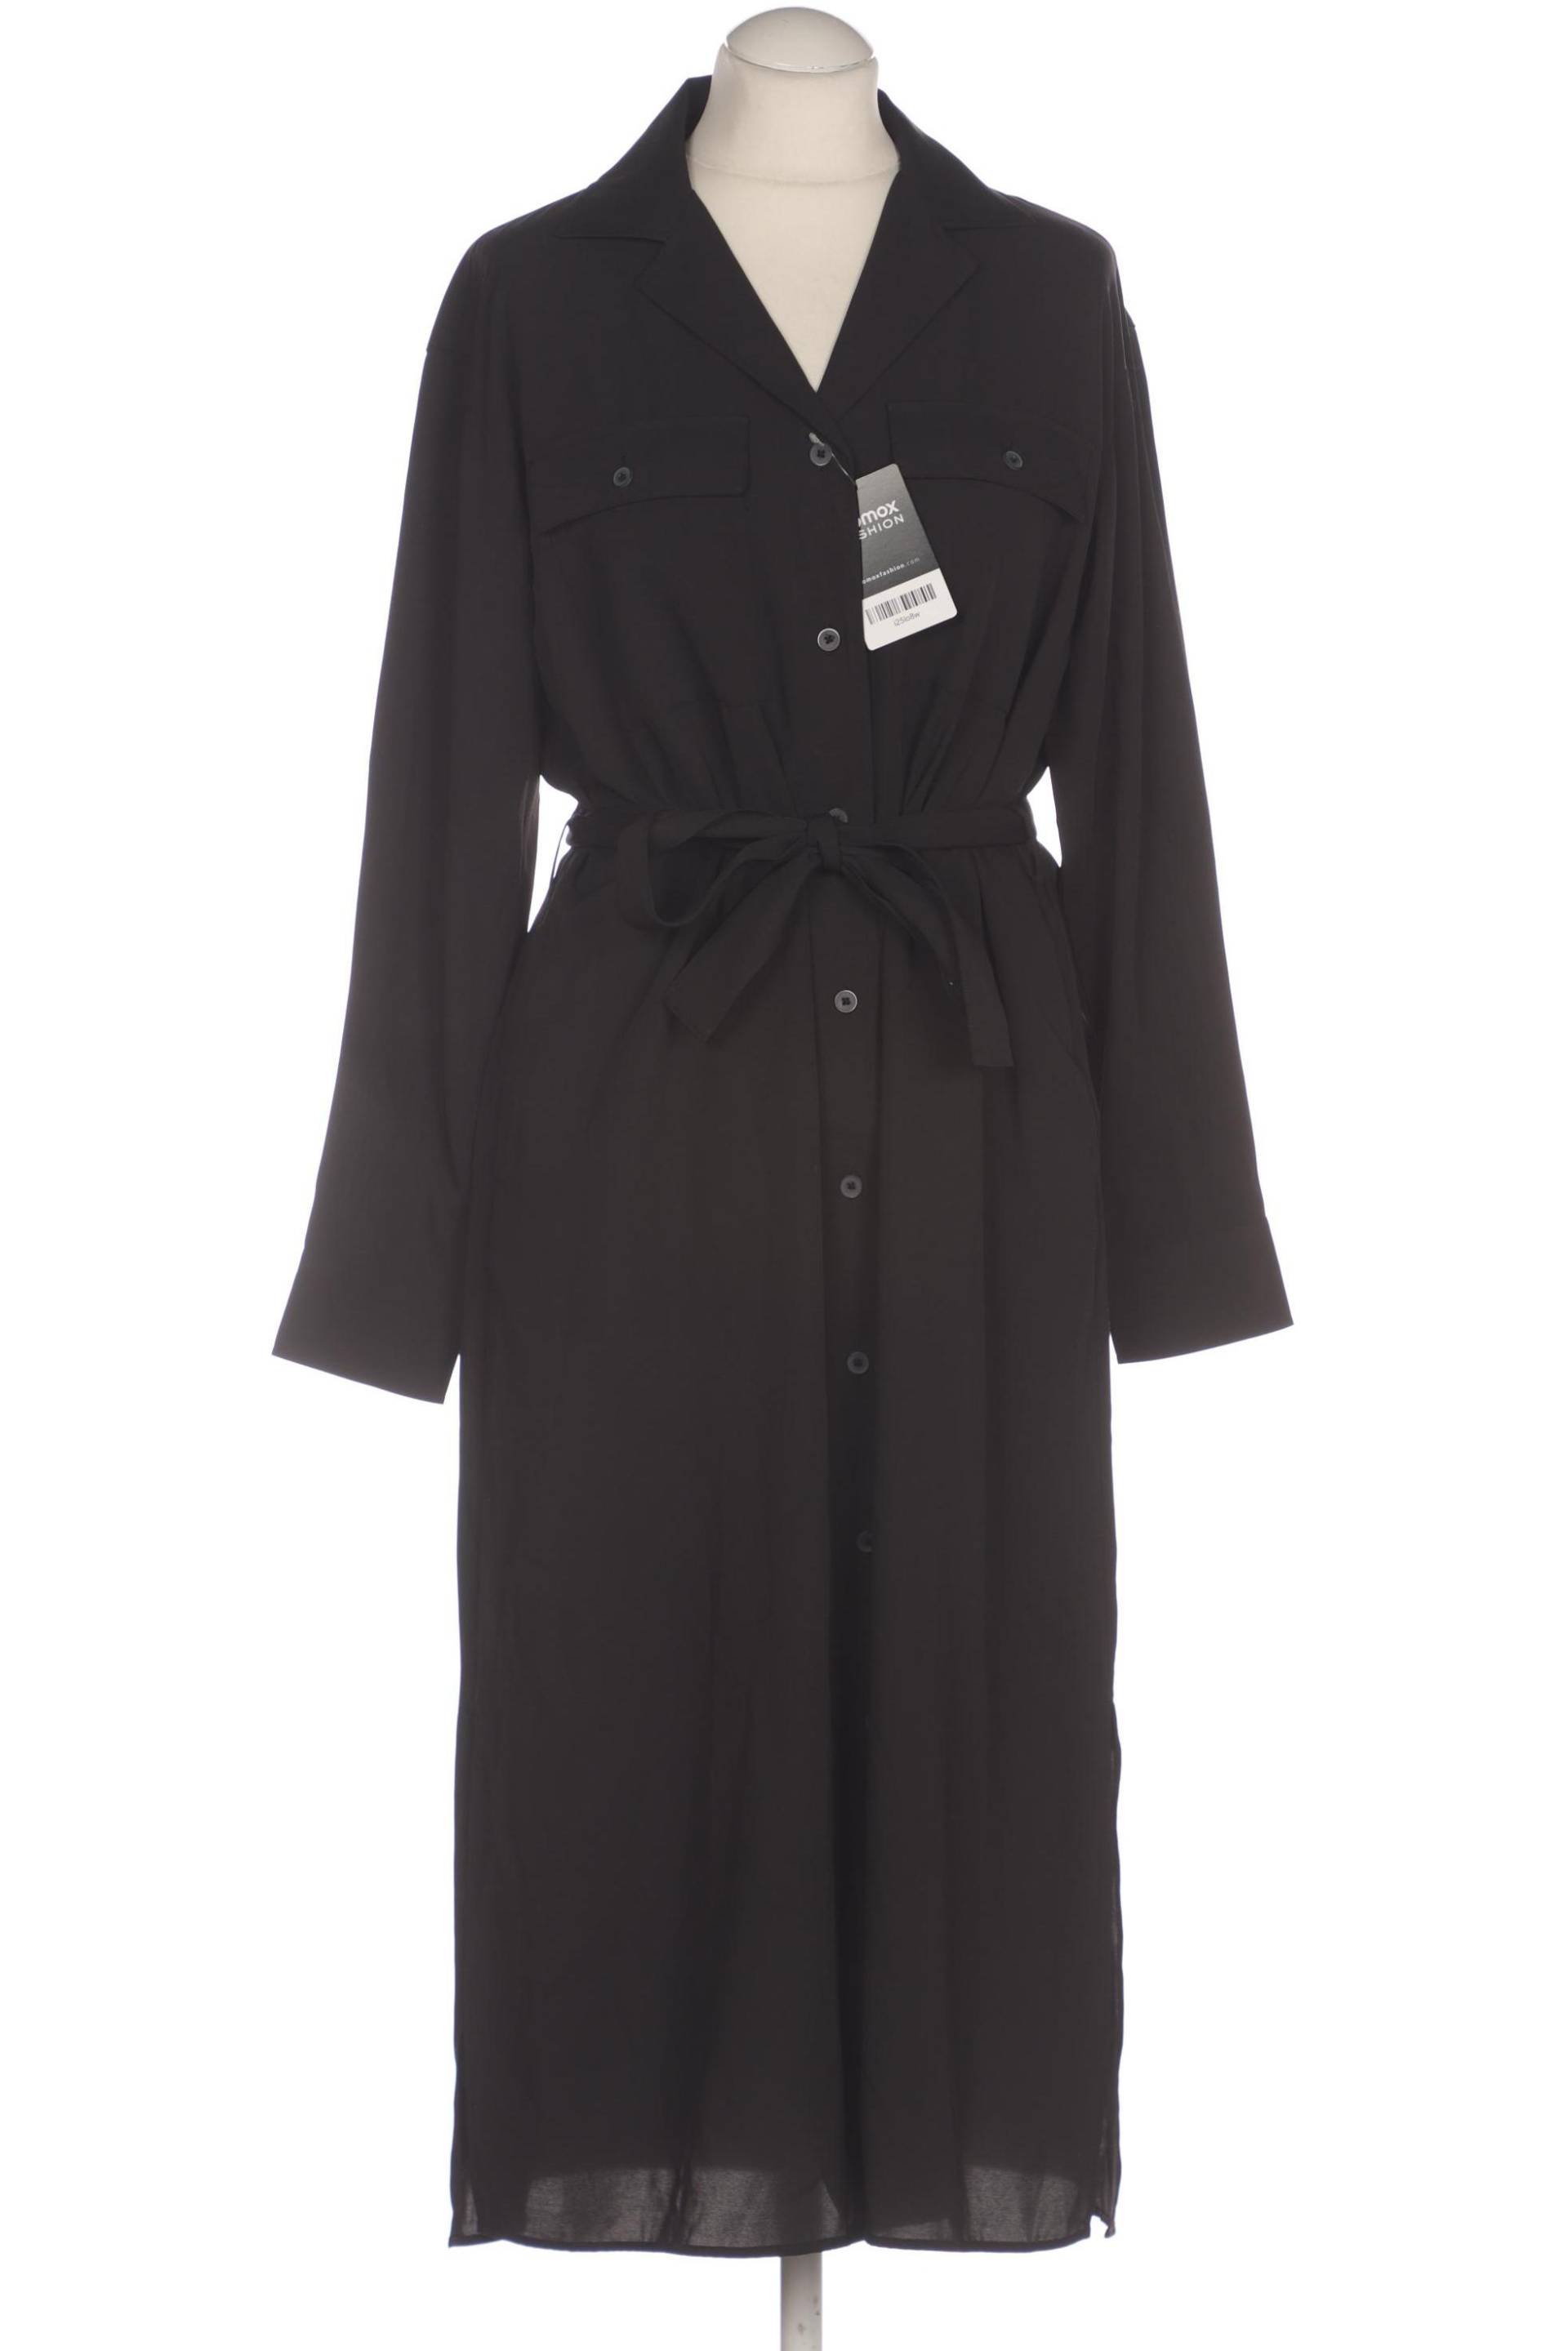 uniqlo Damen Kleid, schwarz, Gr. 36 von uniqlo